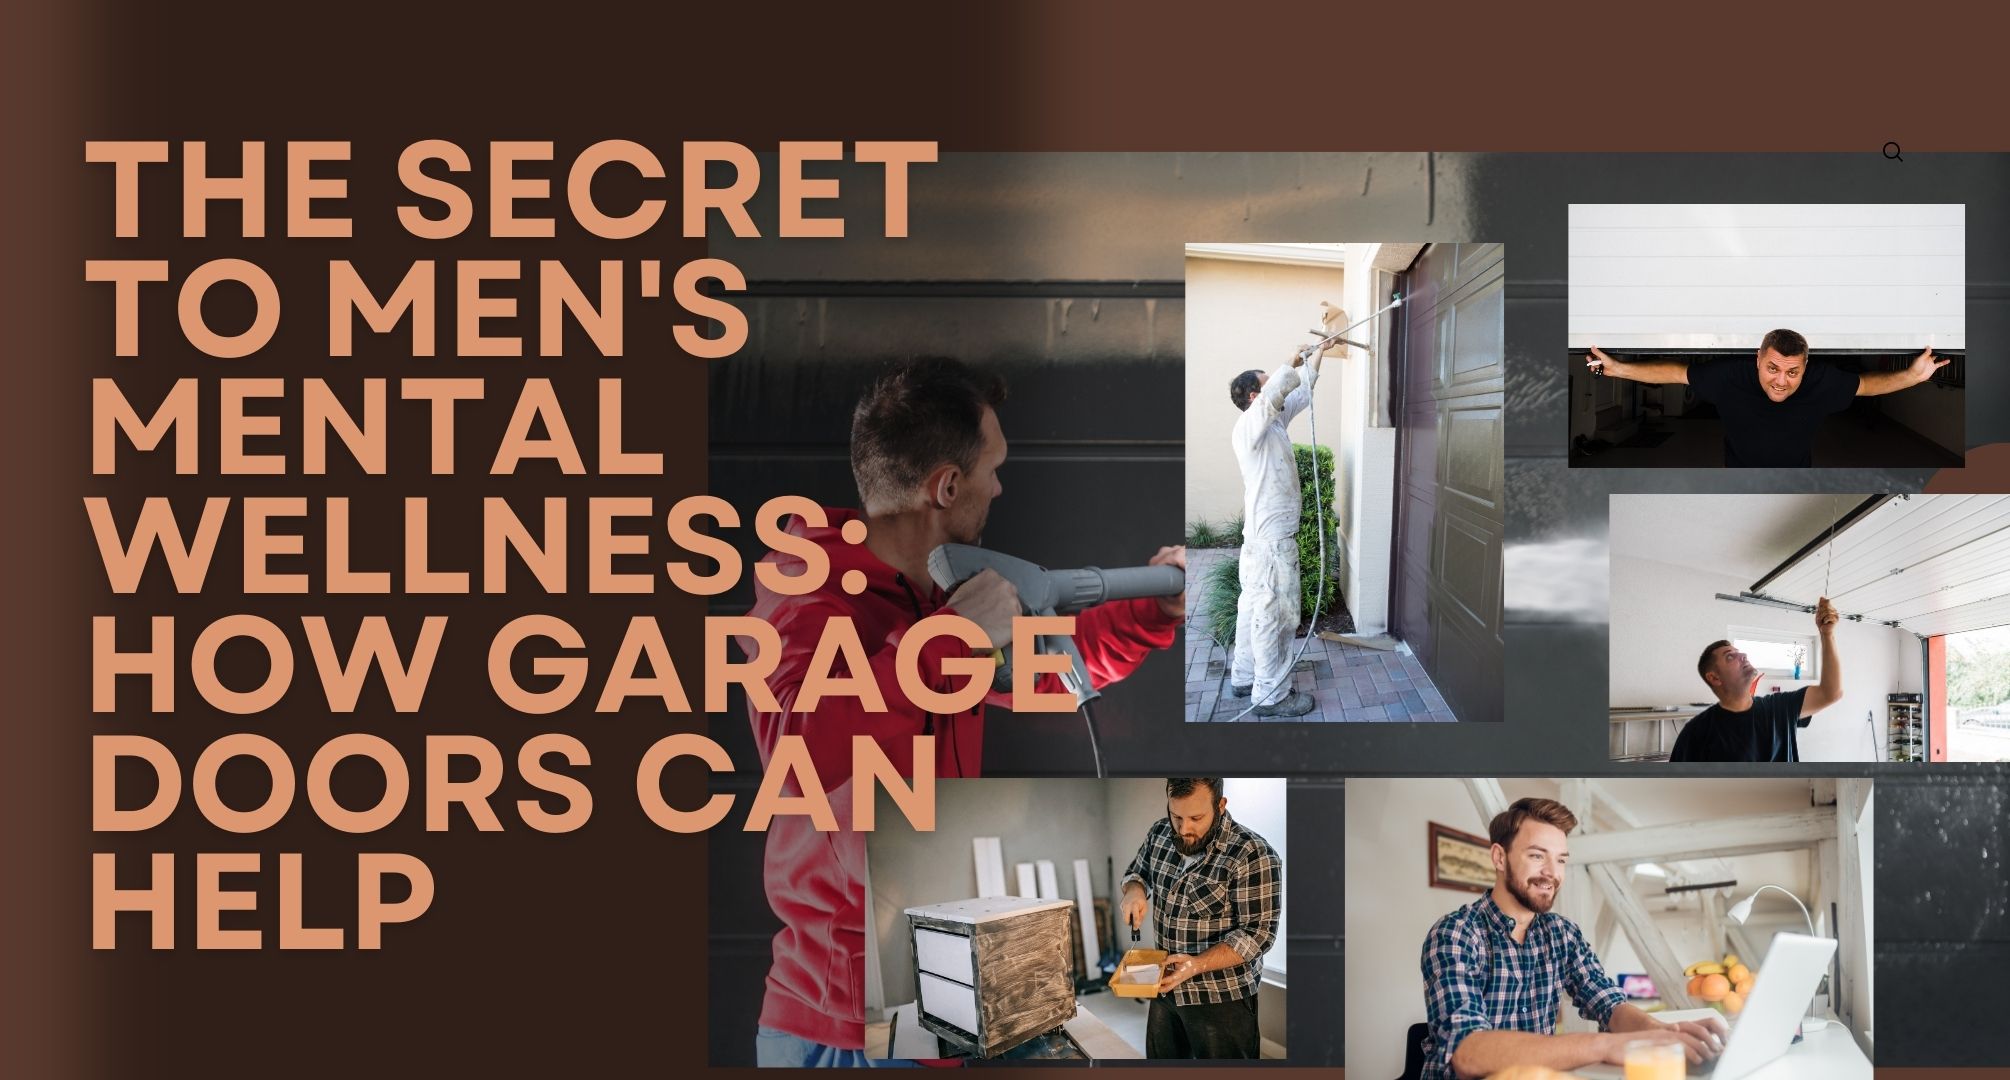 The Secret to Men's Mental Wellness: How Garage Doors Can Help